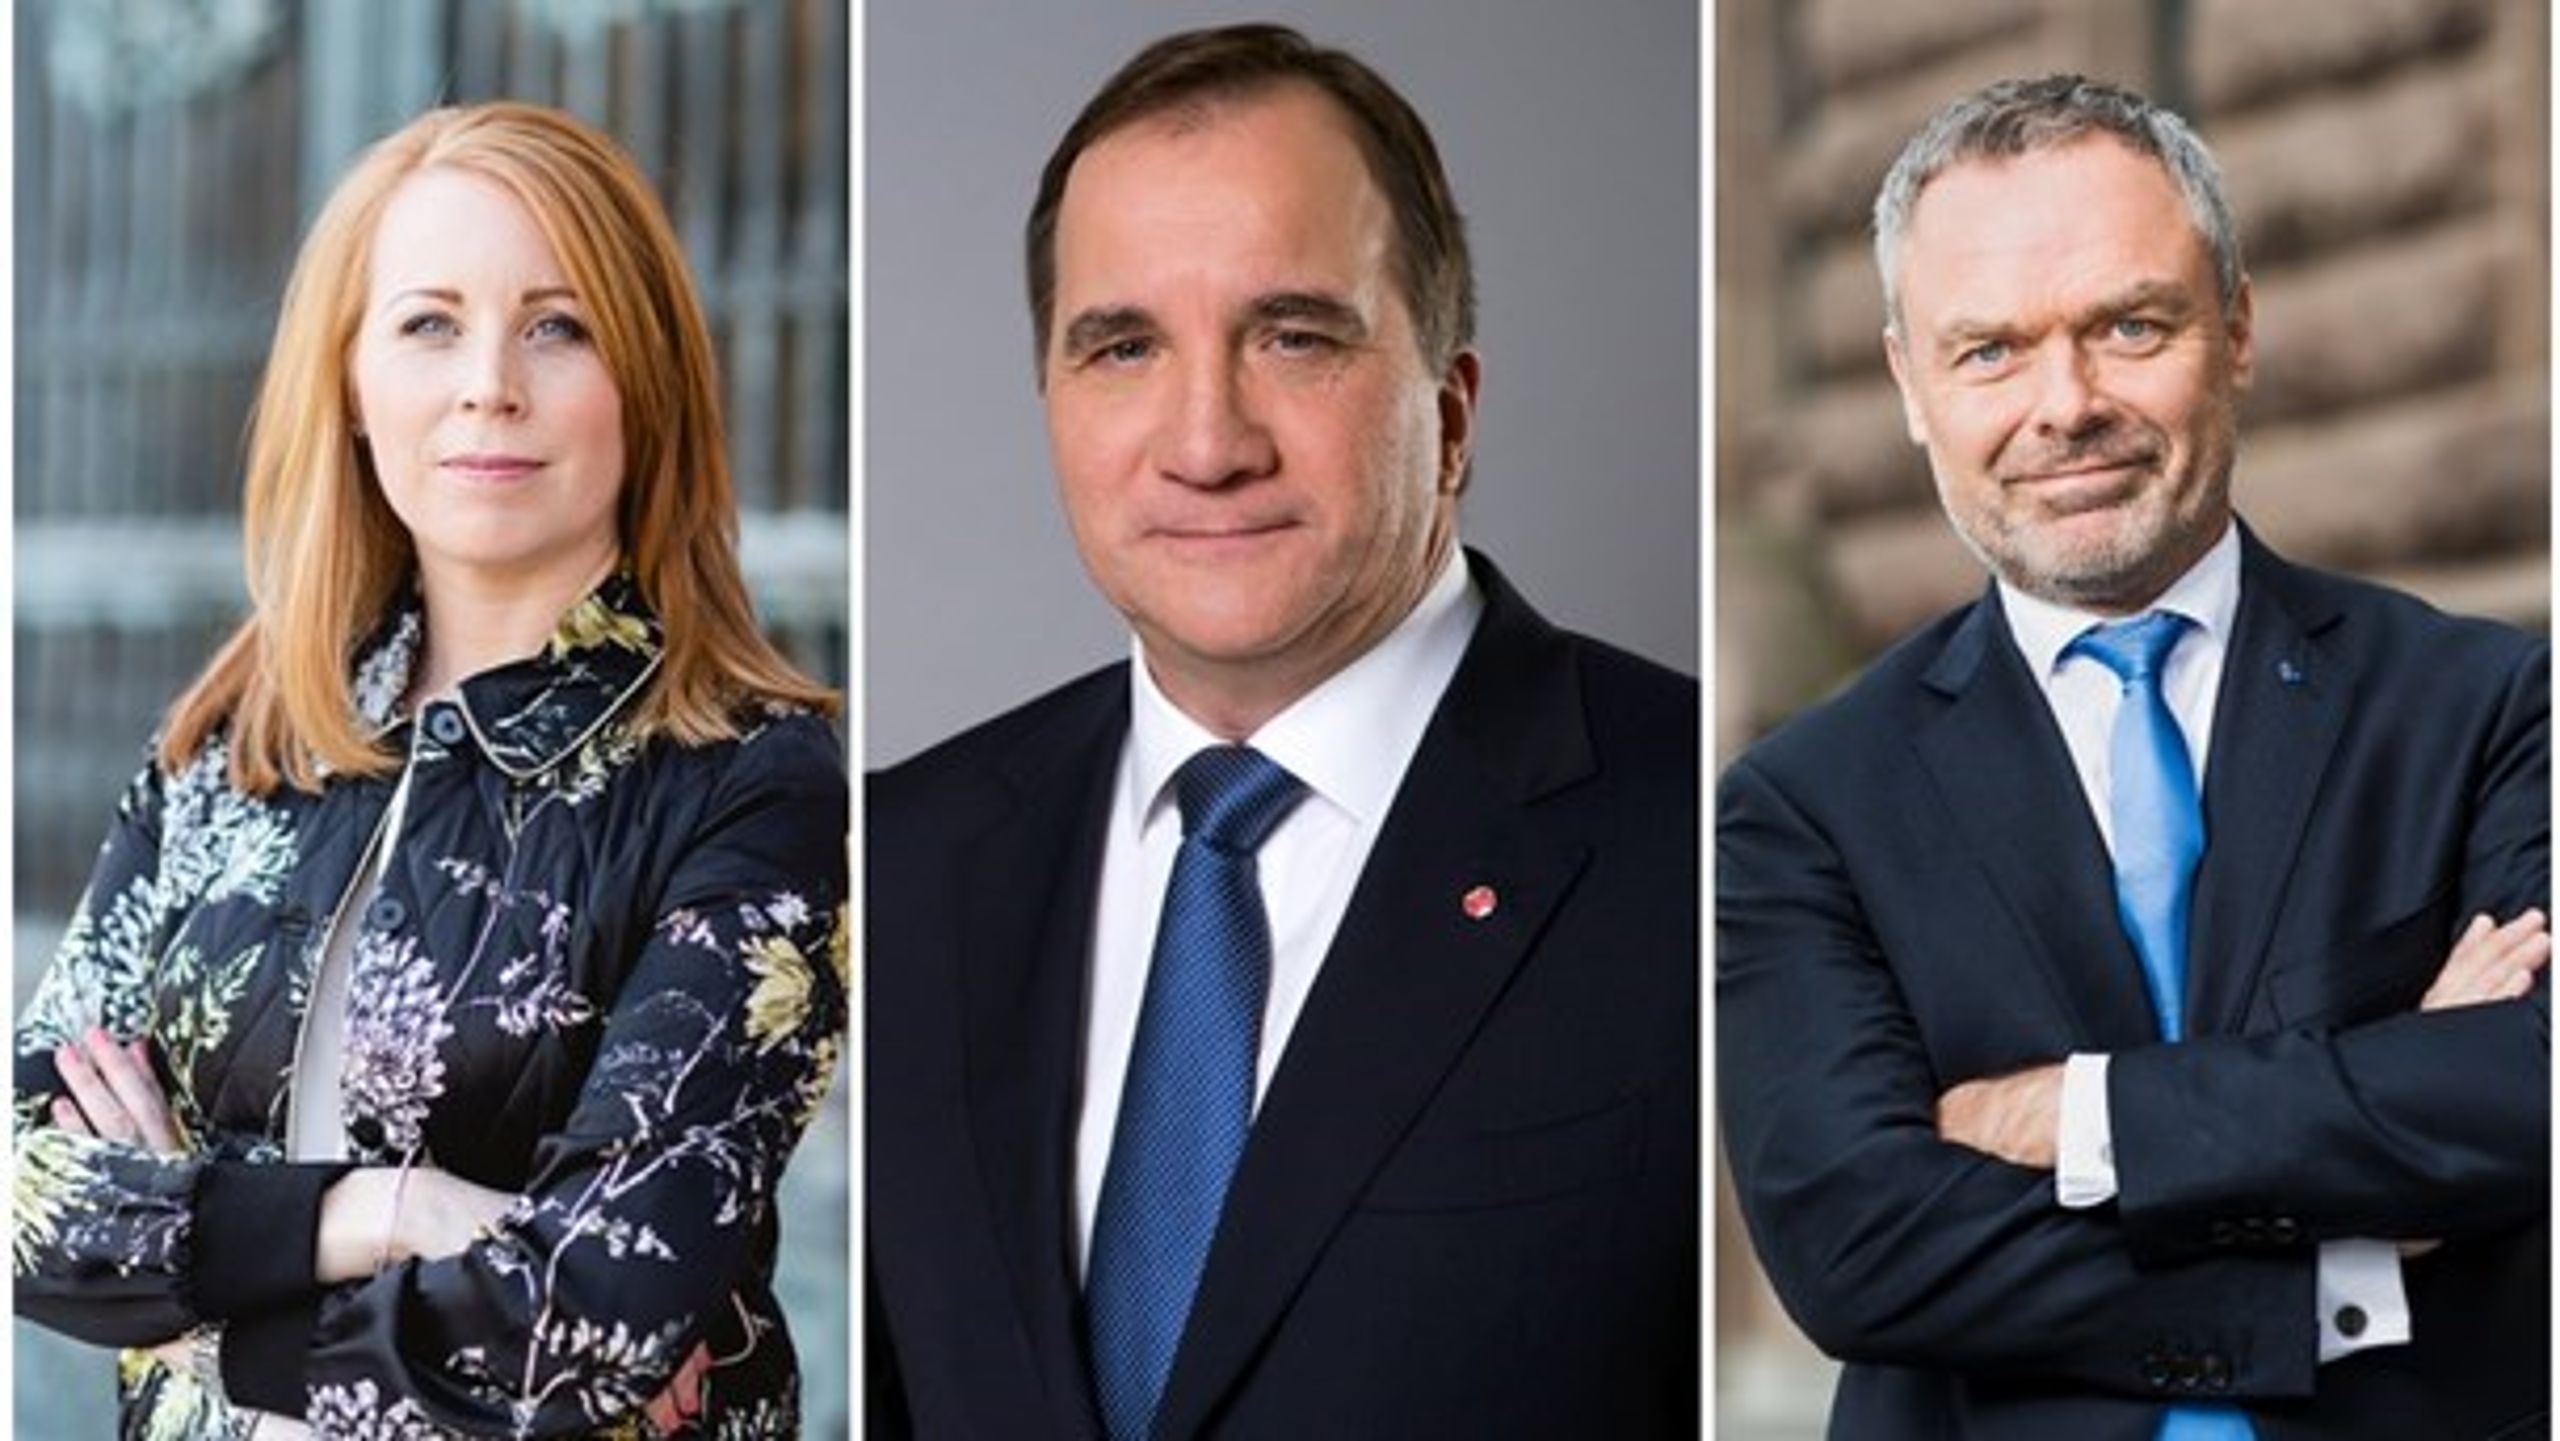 Annie Lööf (C), Stefan Löfven (S) og&nbsp;Jan Björklund (L) kommer ifølge Altingets svenske chefredaktør til at stå i spidsen for Sveriges næste regering.&nbsp;